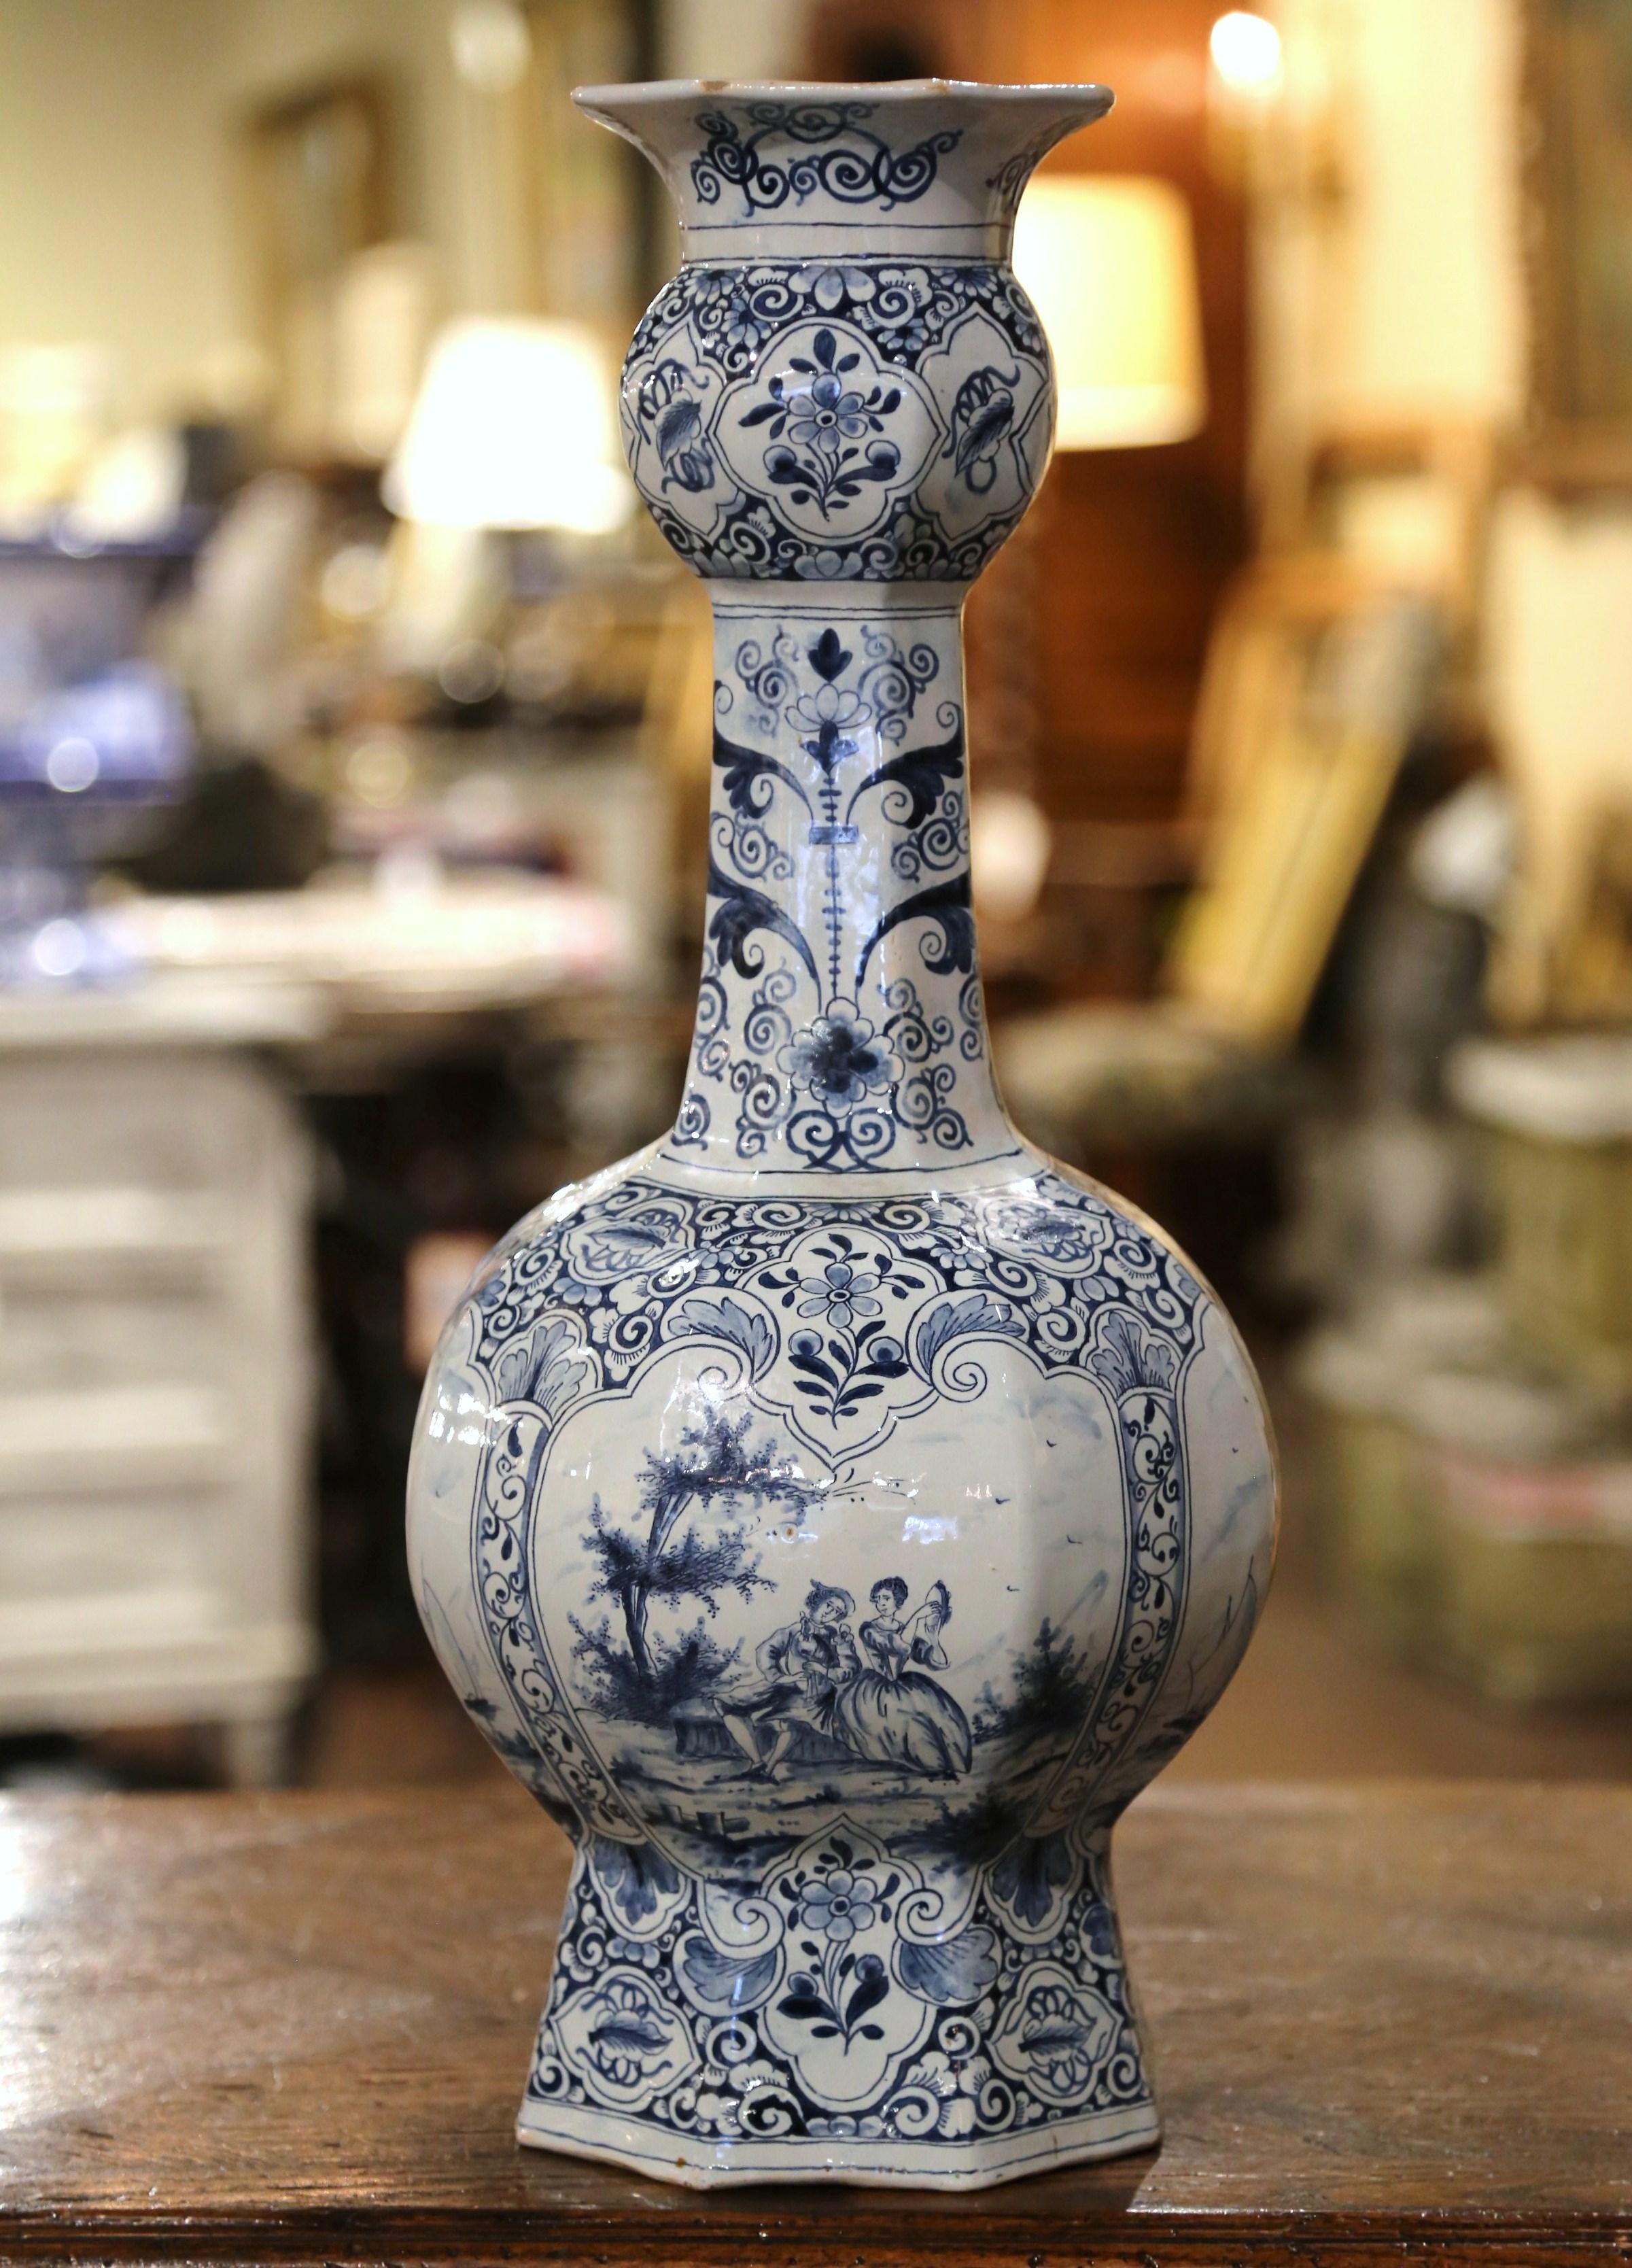 Décorez une console ou un buffet avec cet élégant vase ancien. Fabriqué en France vers 1880, ce grand vase en faïence a une forme magnifique avec un corps arrondi et un col long et fin. Peint à la main dans la palette bleue et blanche